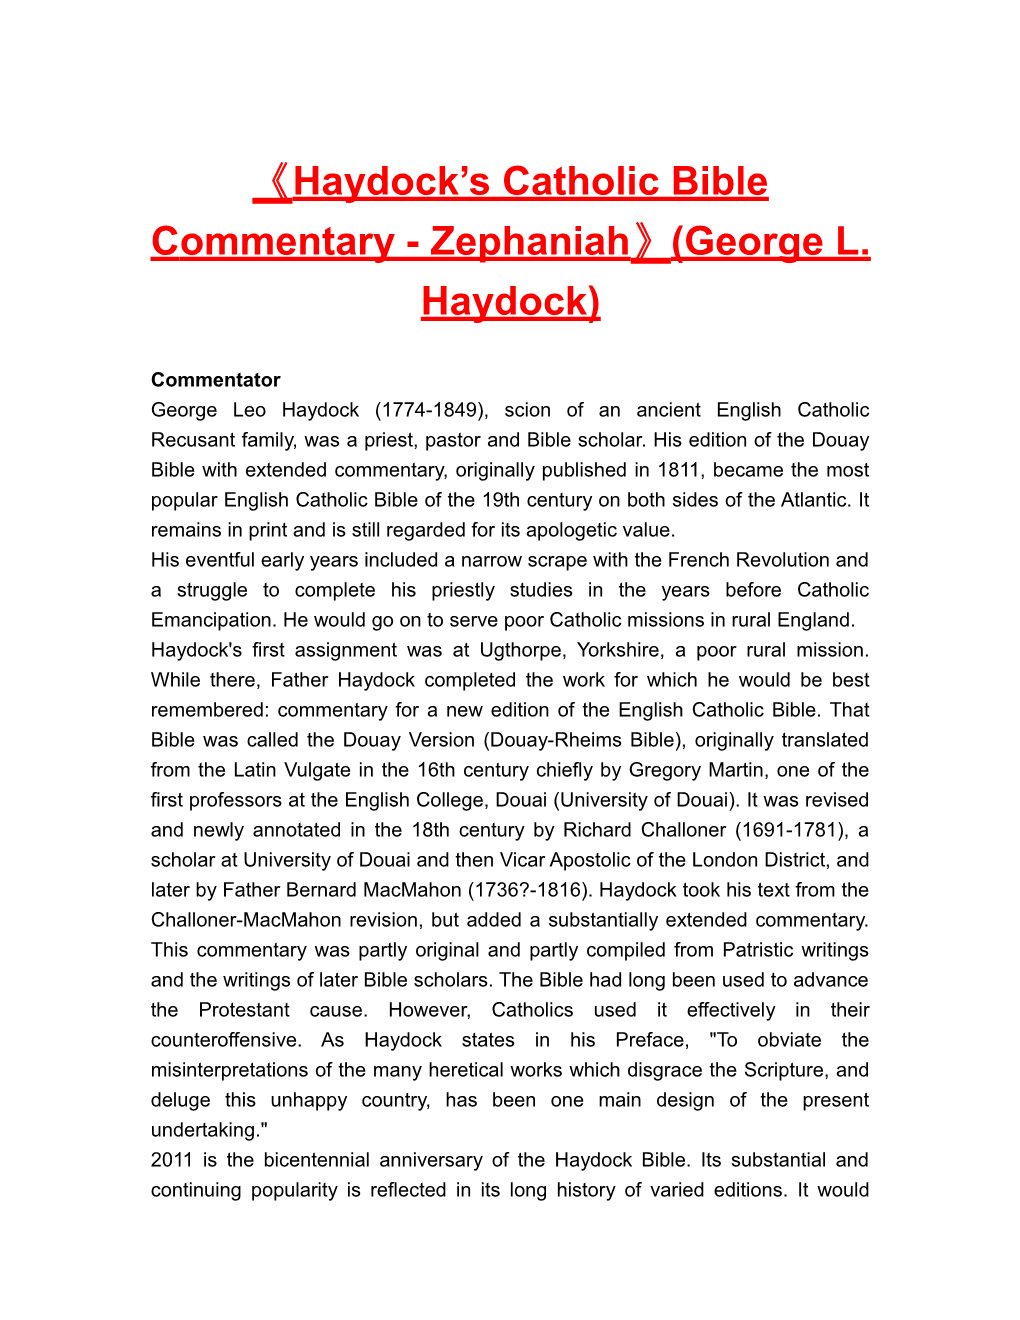 Haydock Scatholic Bible Commentary-Zephaniah (George L. Haydock)